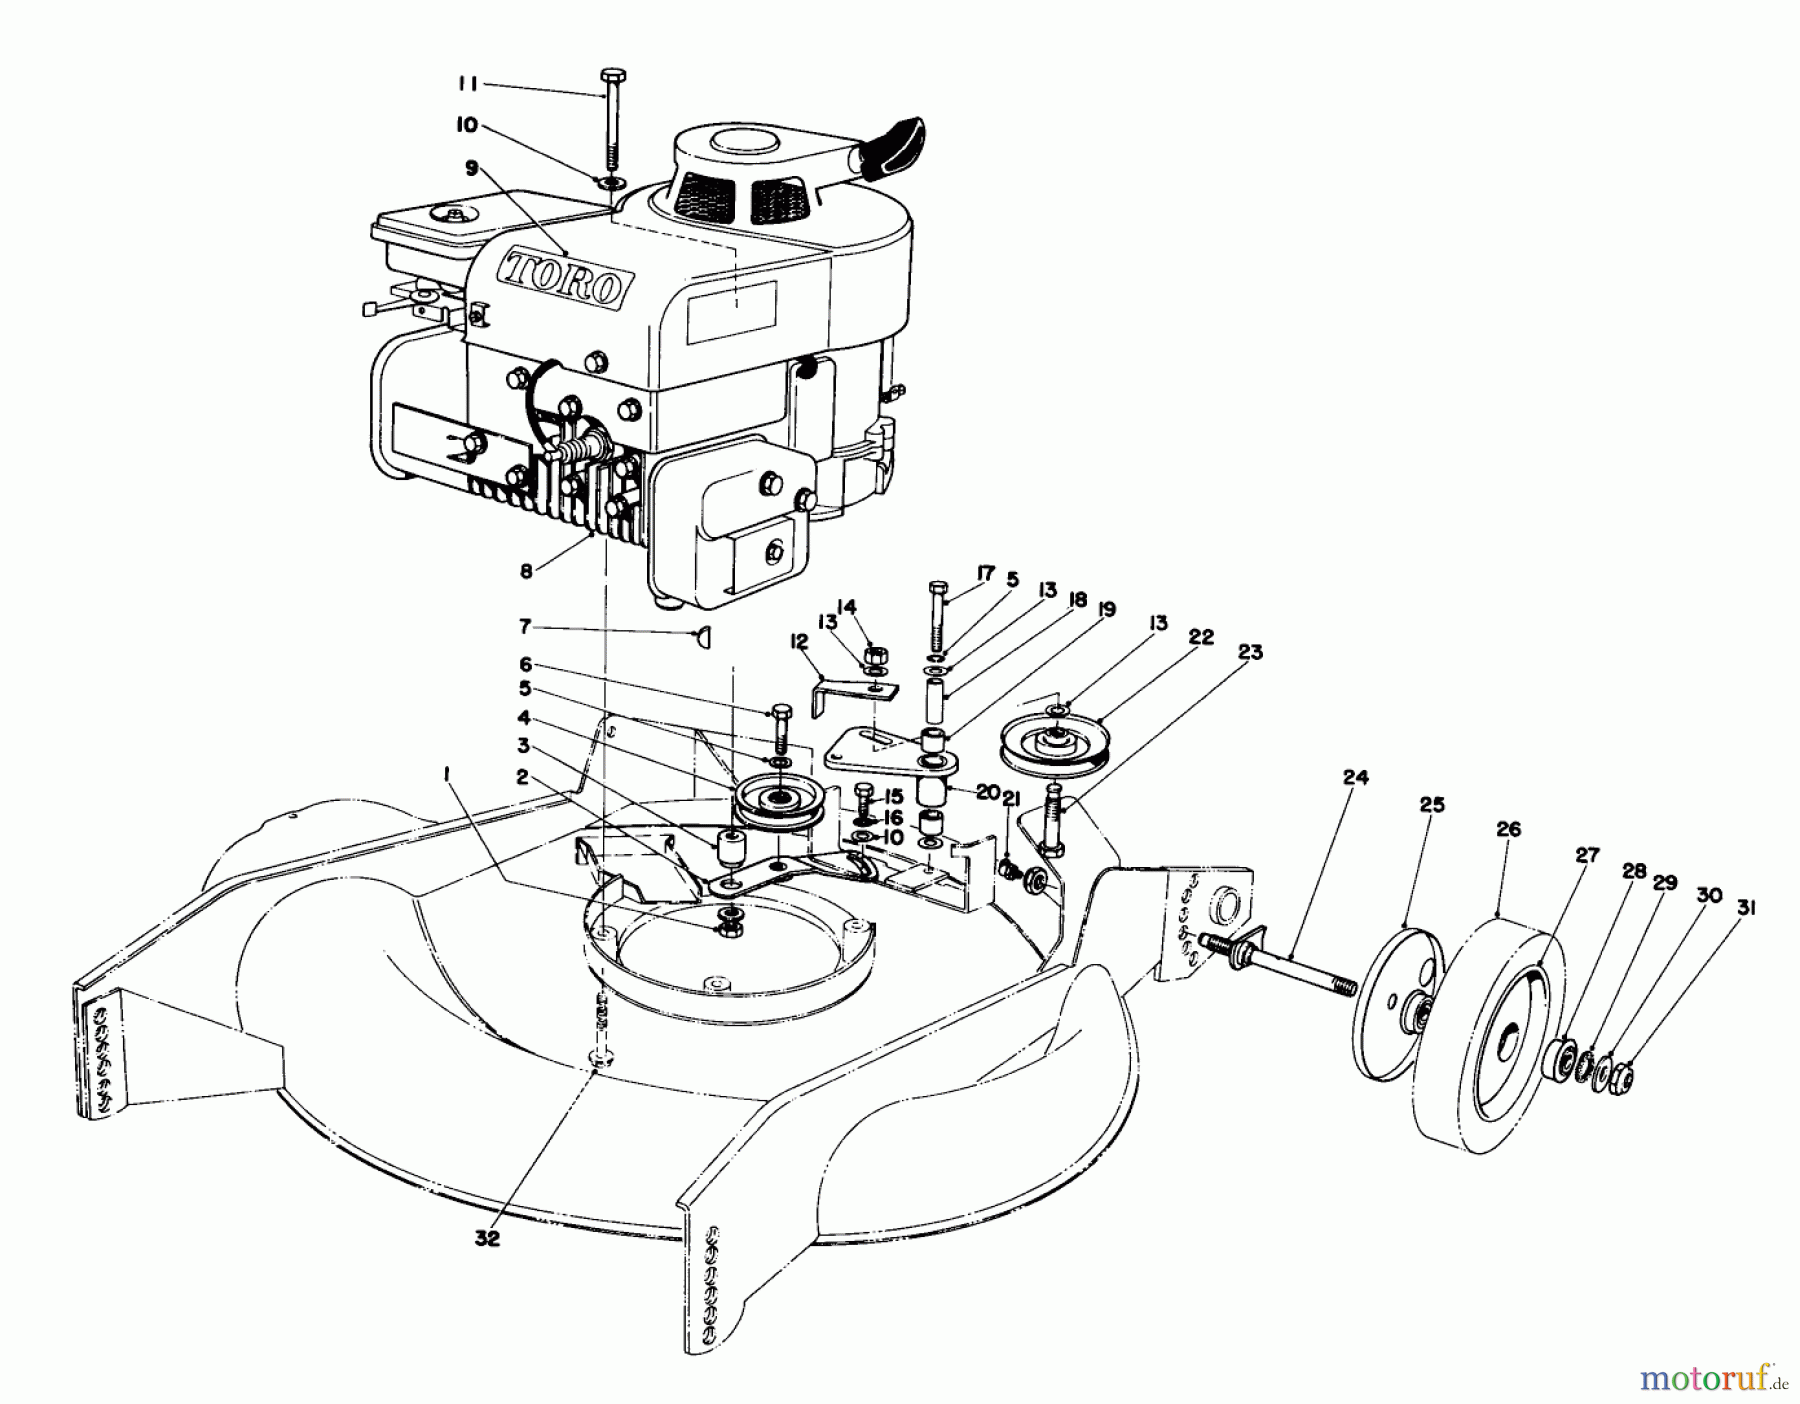  Toro Neu Mowers, Walk-Behind Seite 2 23177 - Toro Lawnmower, 1976 (6000001-6999999) ENGINE ASSEMBLY